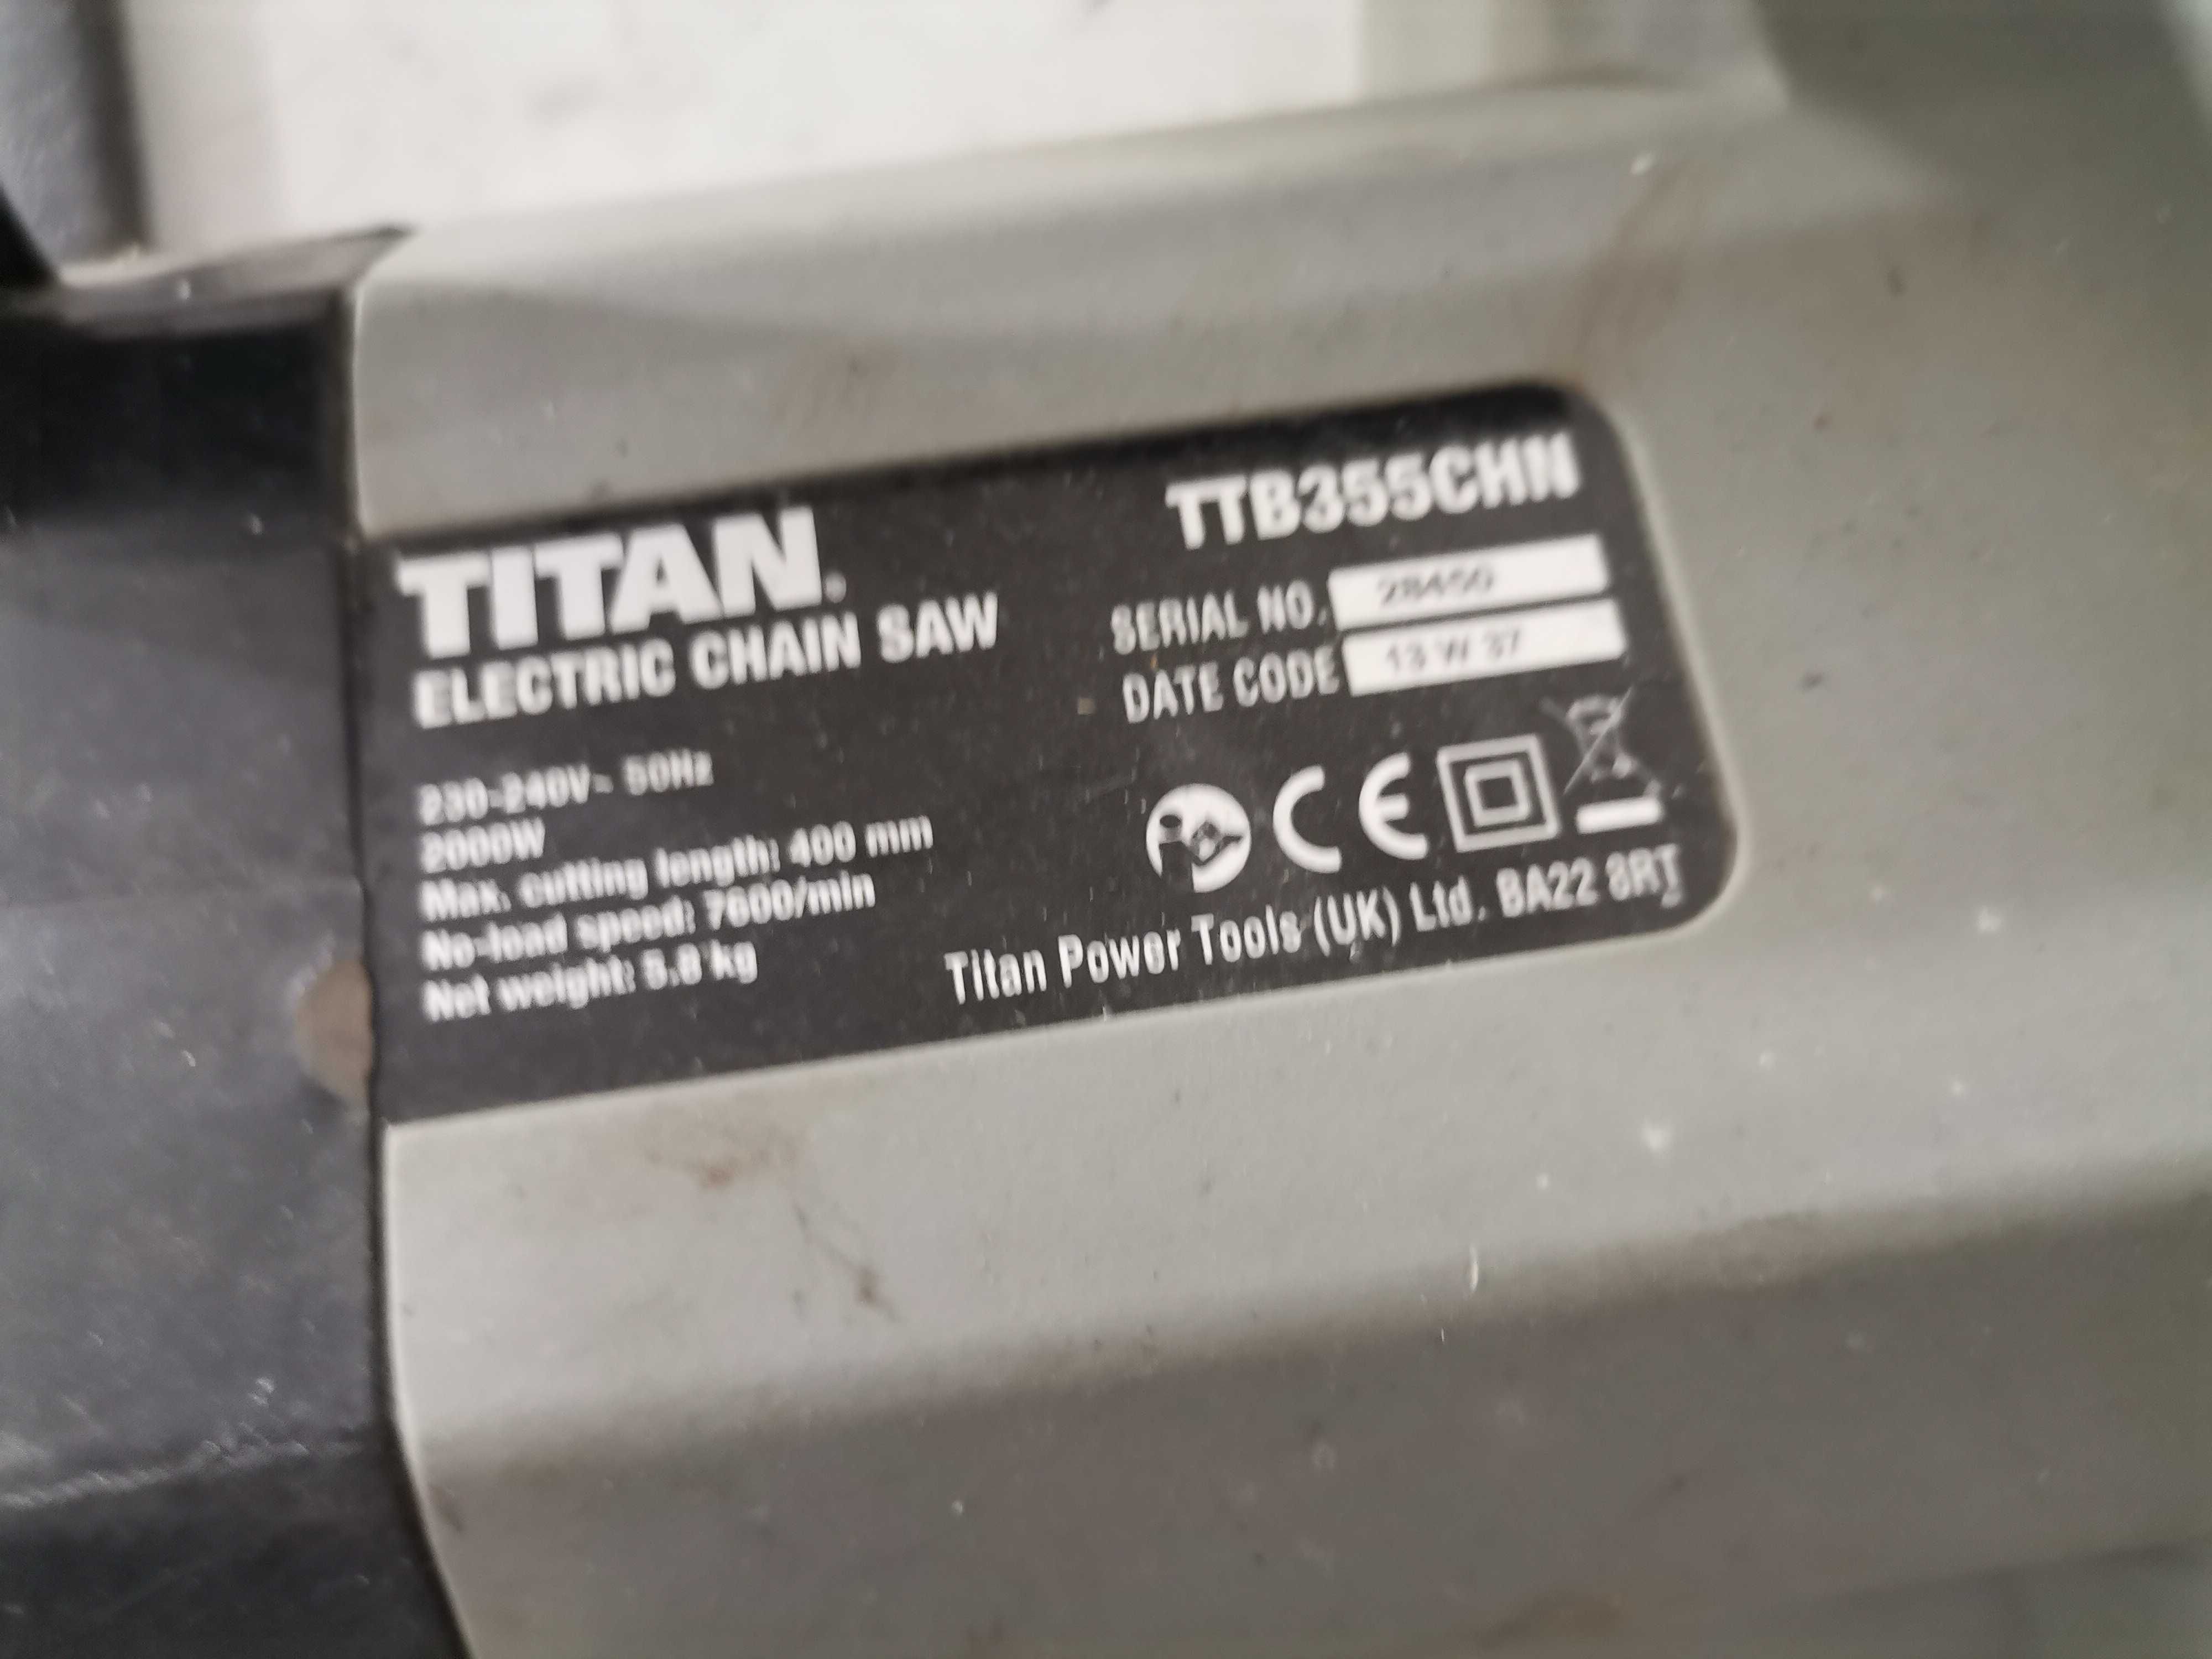 Резачка - Titan 2000 W